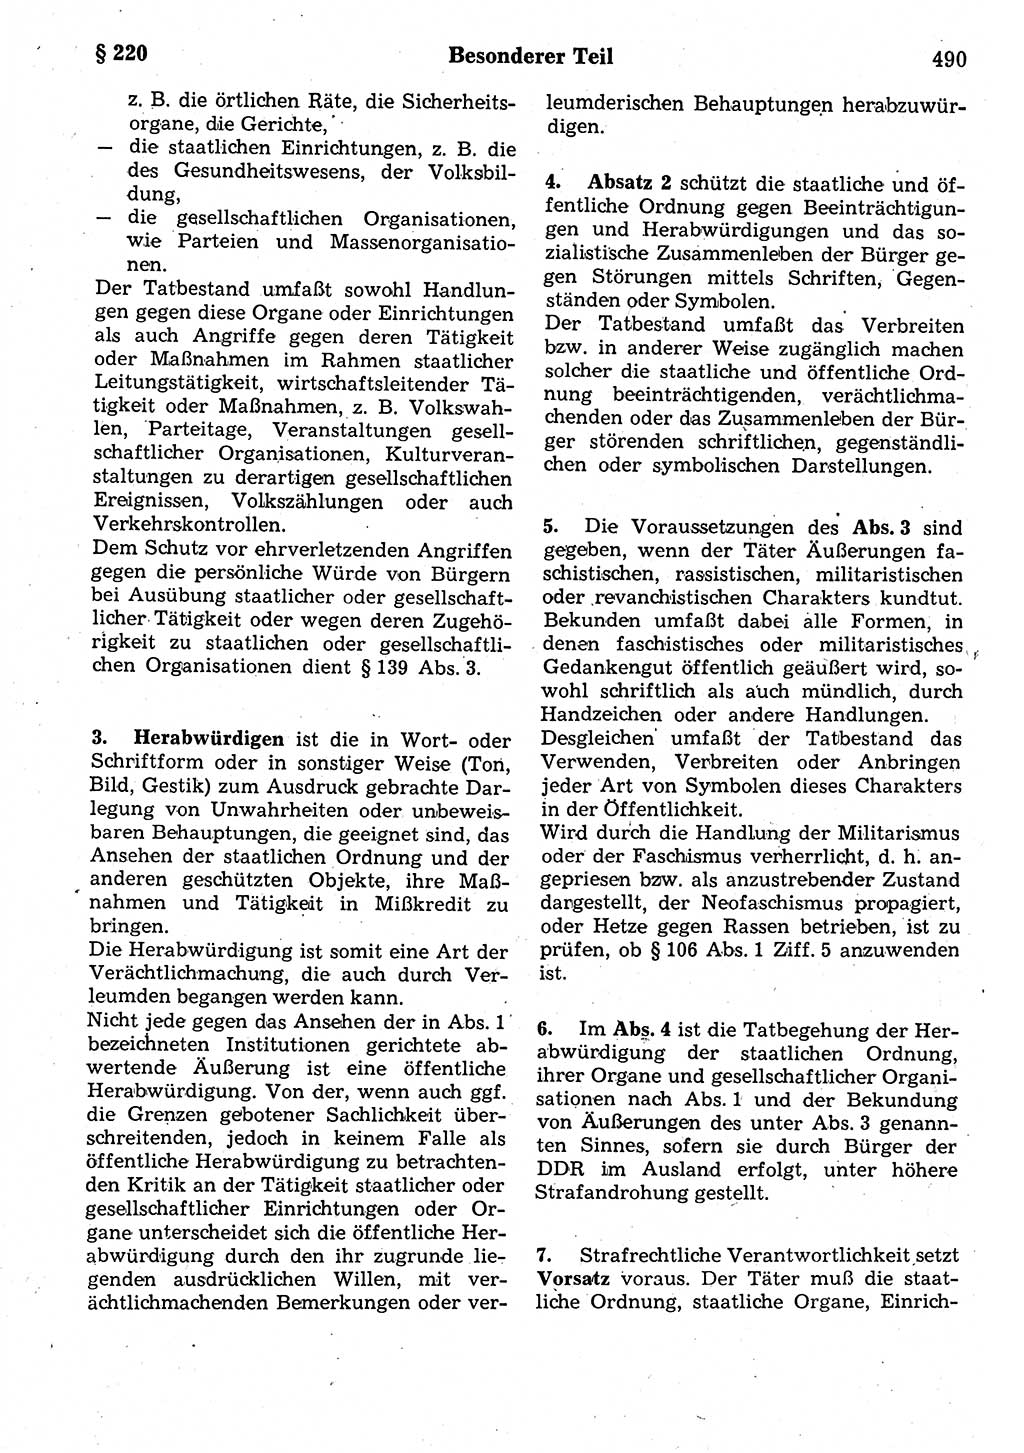 Strafrecht der Deutschen Demokratischen Republik (DDR), Kommentar zum Strafgesetzbuch (StGB) 1987, Seite 490 (Strafr. DDR Komm. StGB 1987, S. 490)